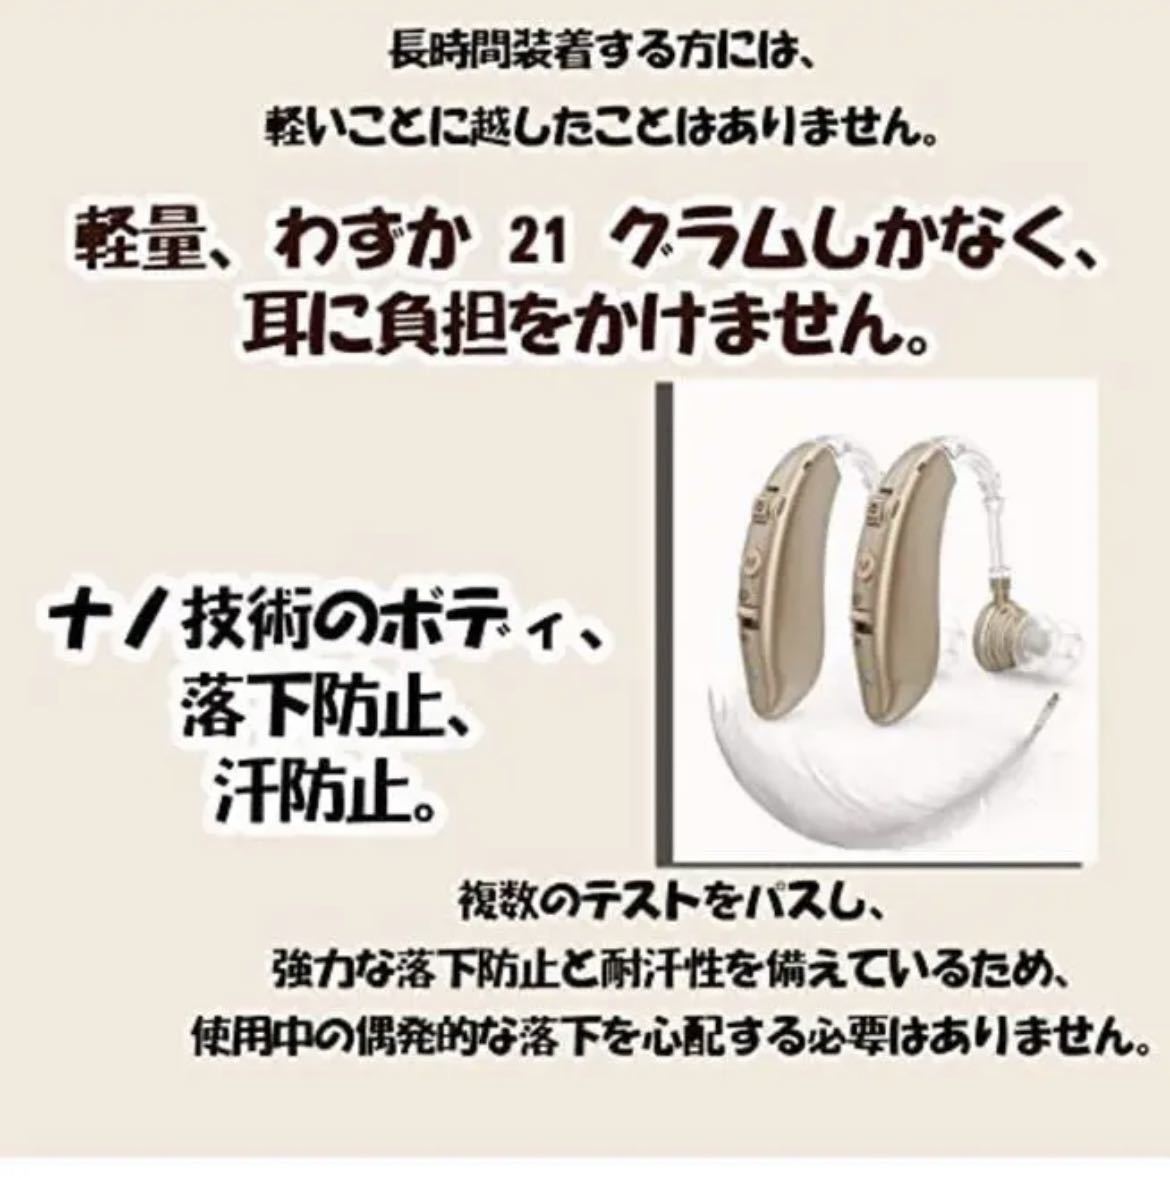  сборник звук контейнер заряжающийся легкий левый правый обе для 4 вид режим высота Kiyoshi качество звука режим переключатель японский язык есть руководство пользователя .( чай цвет )